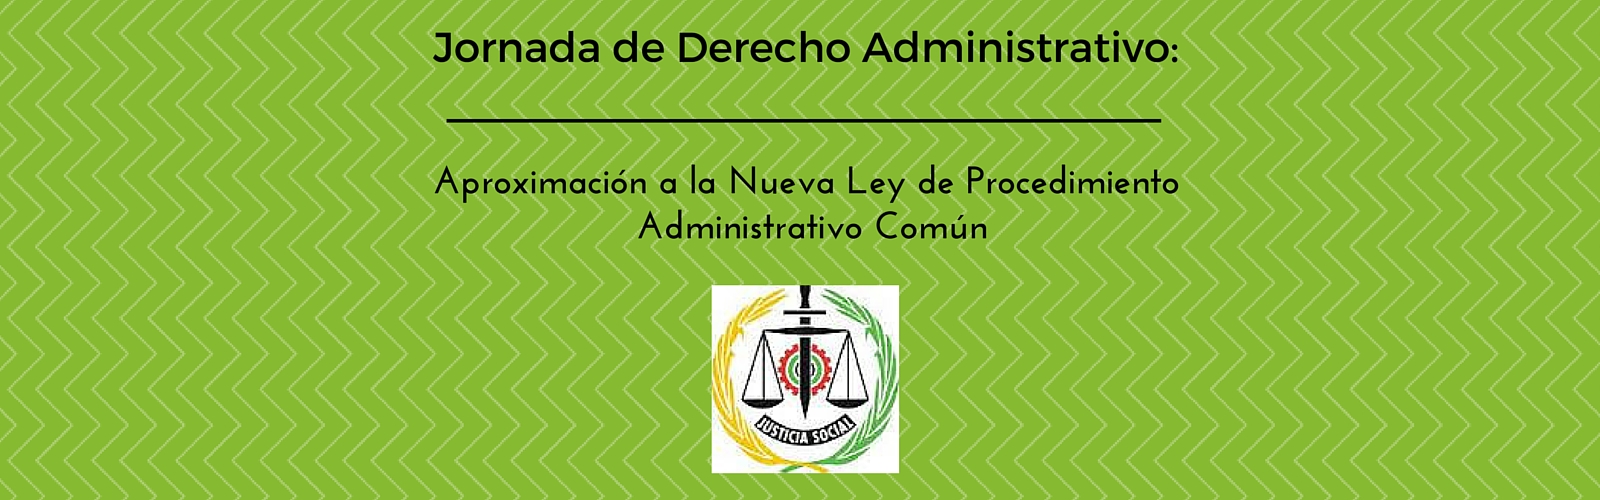 Jornada de Derecho Administrativo: Aproximación a la Nueva Ley de Procedimiento Administrativo Común